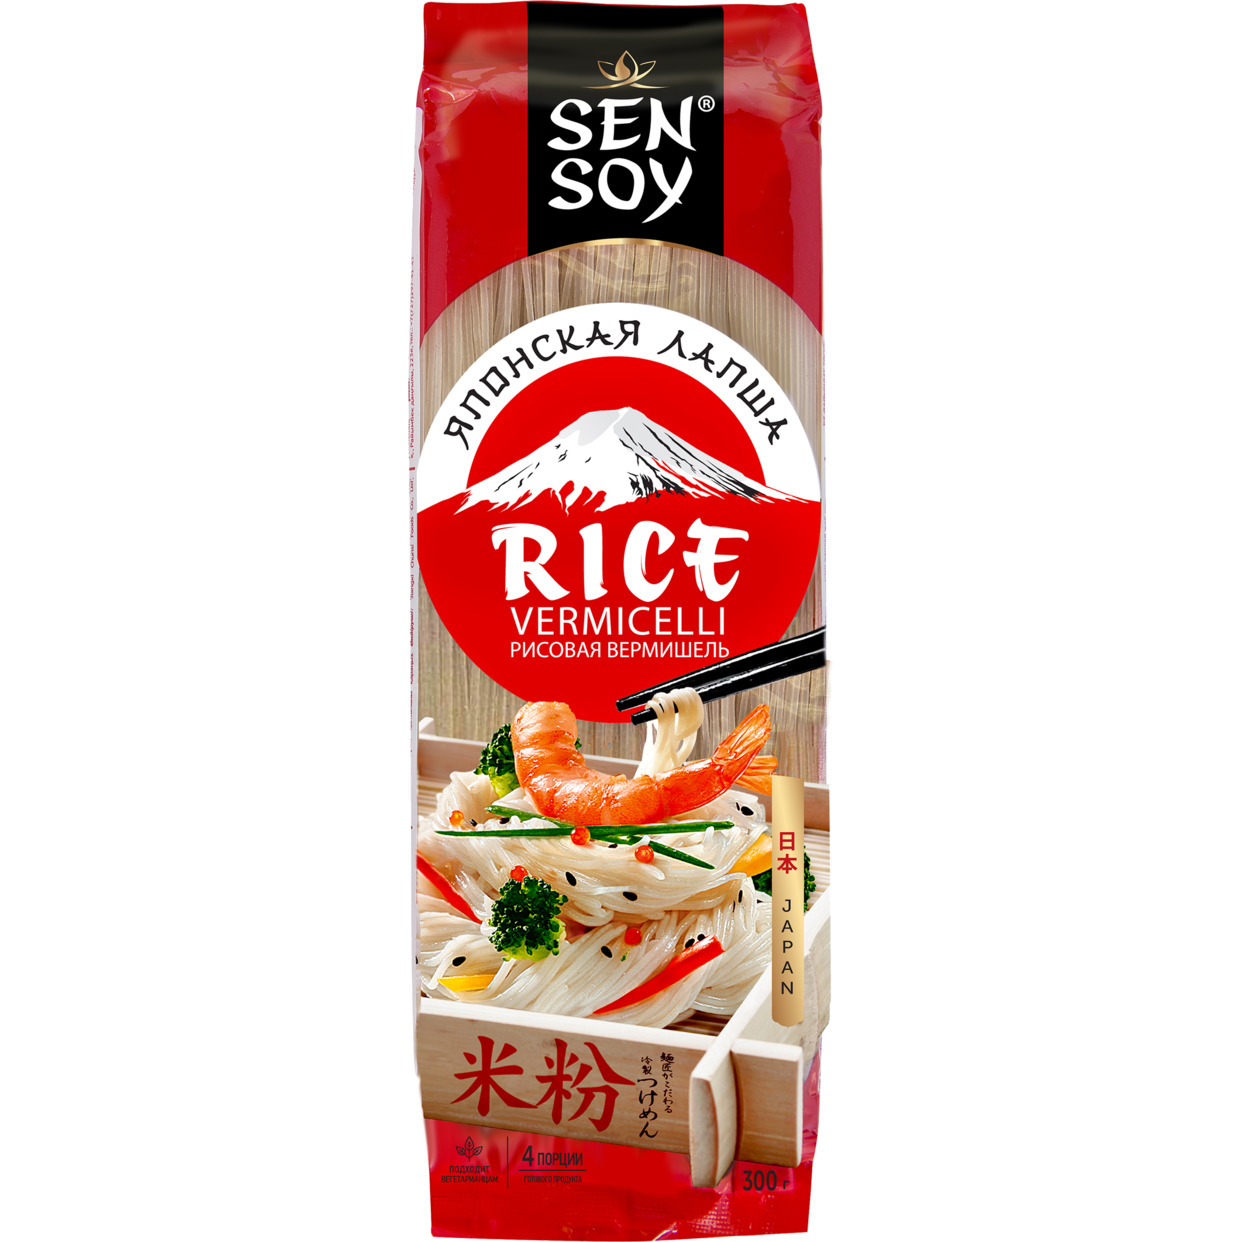 Лапша Sen Soy Premium Rice Vermicelli рисовая 300г